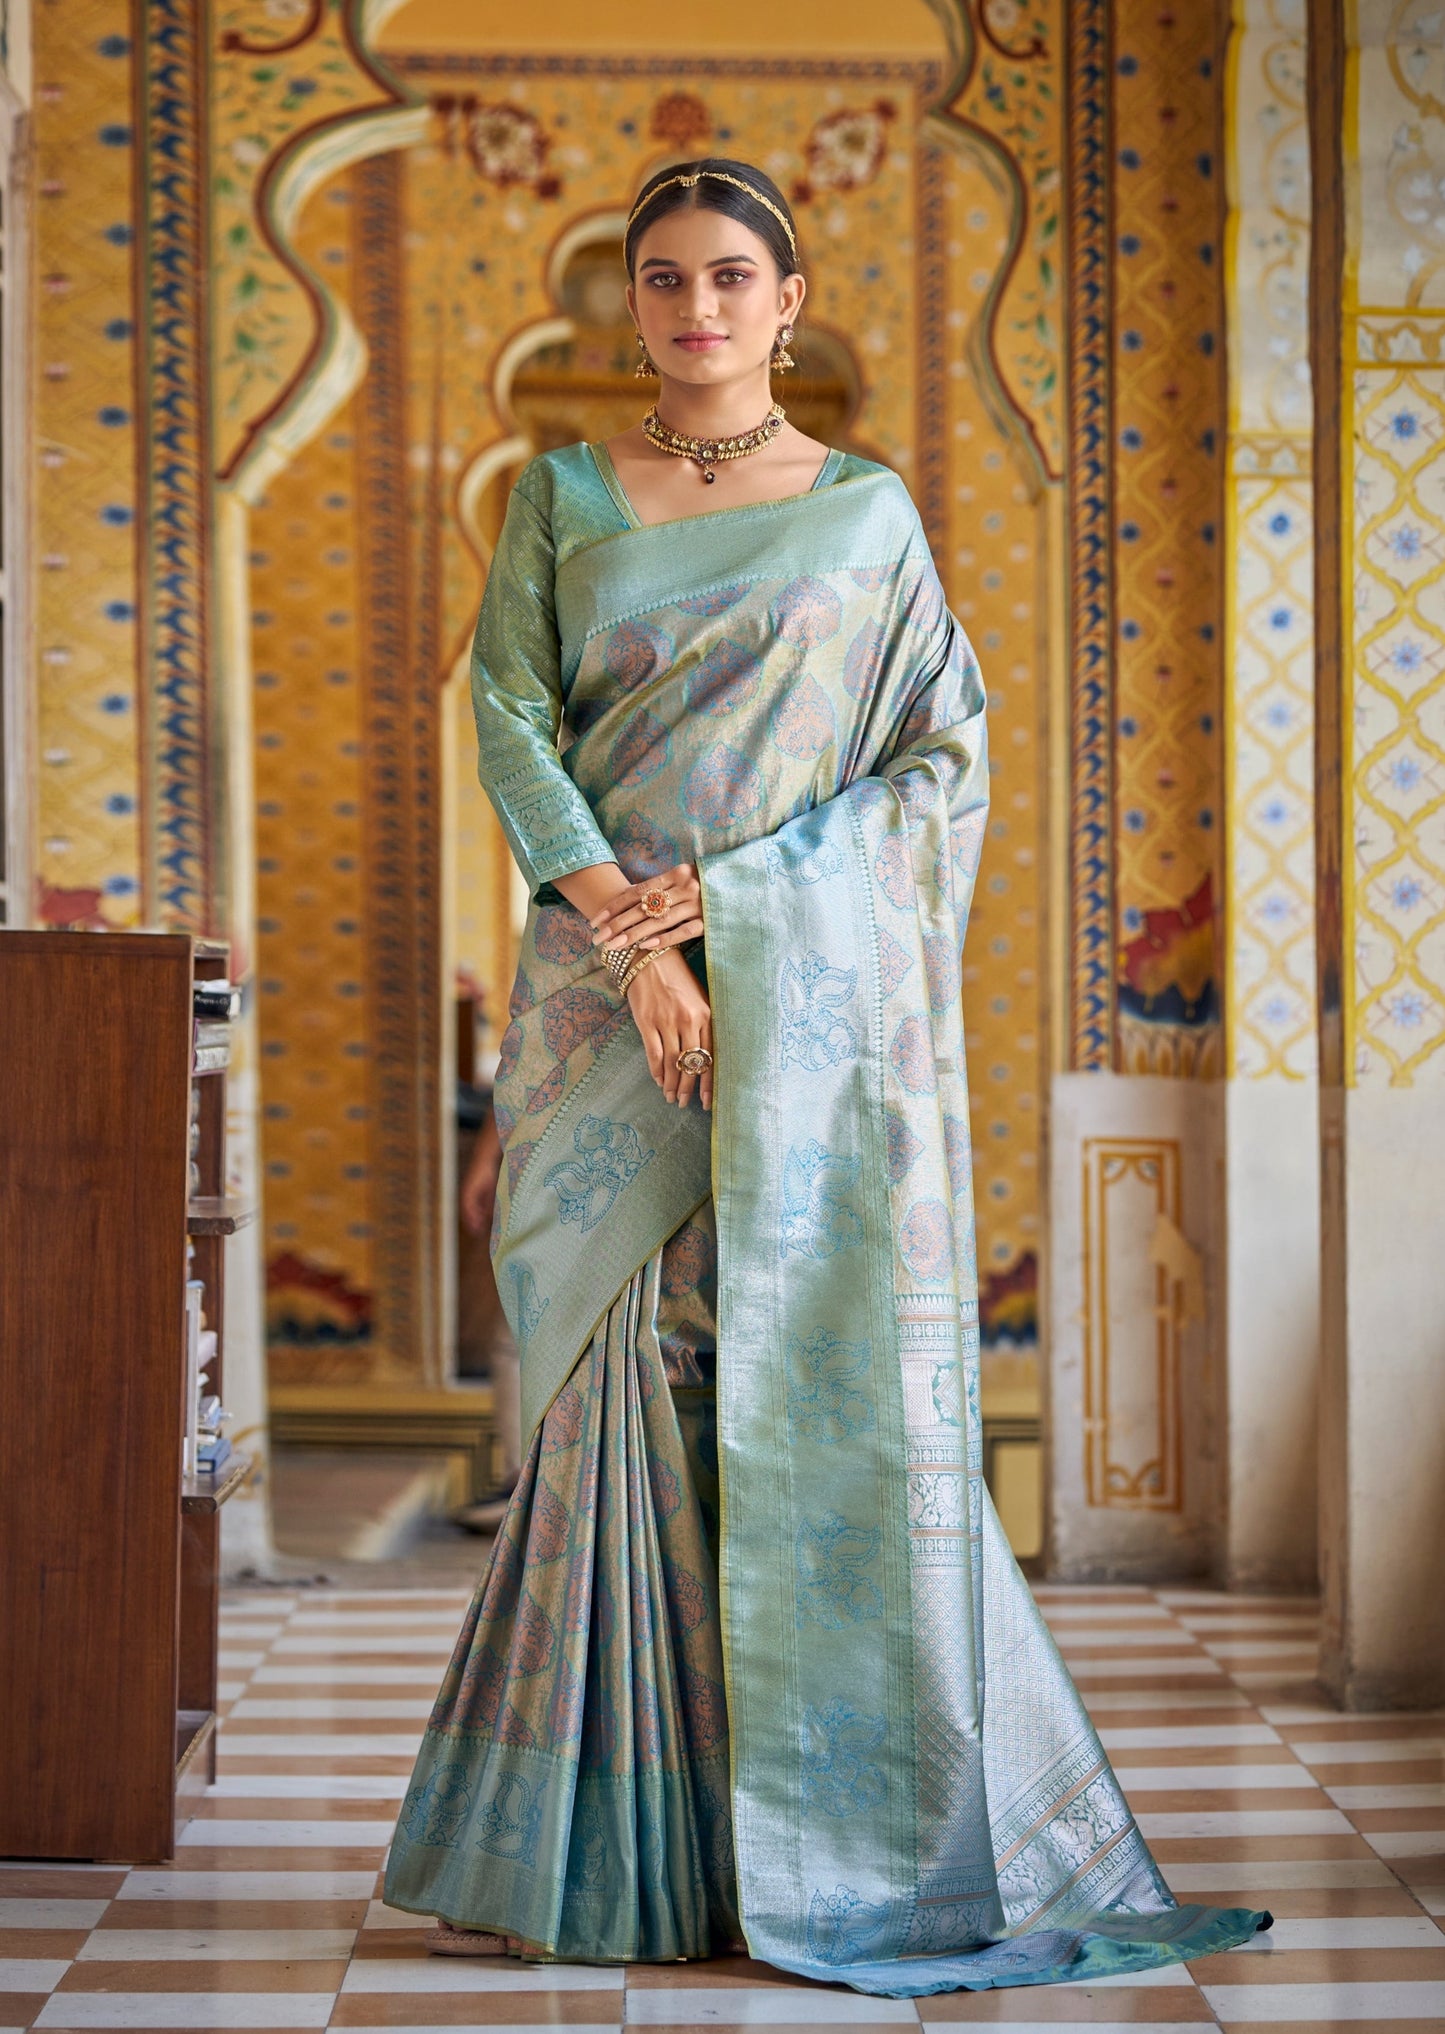 Woman standing in light blue Kanchipuram saree